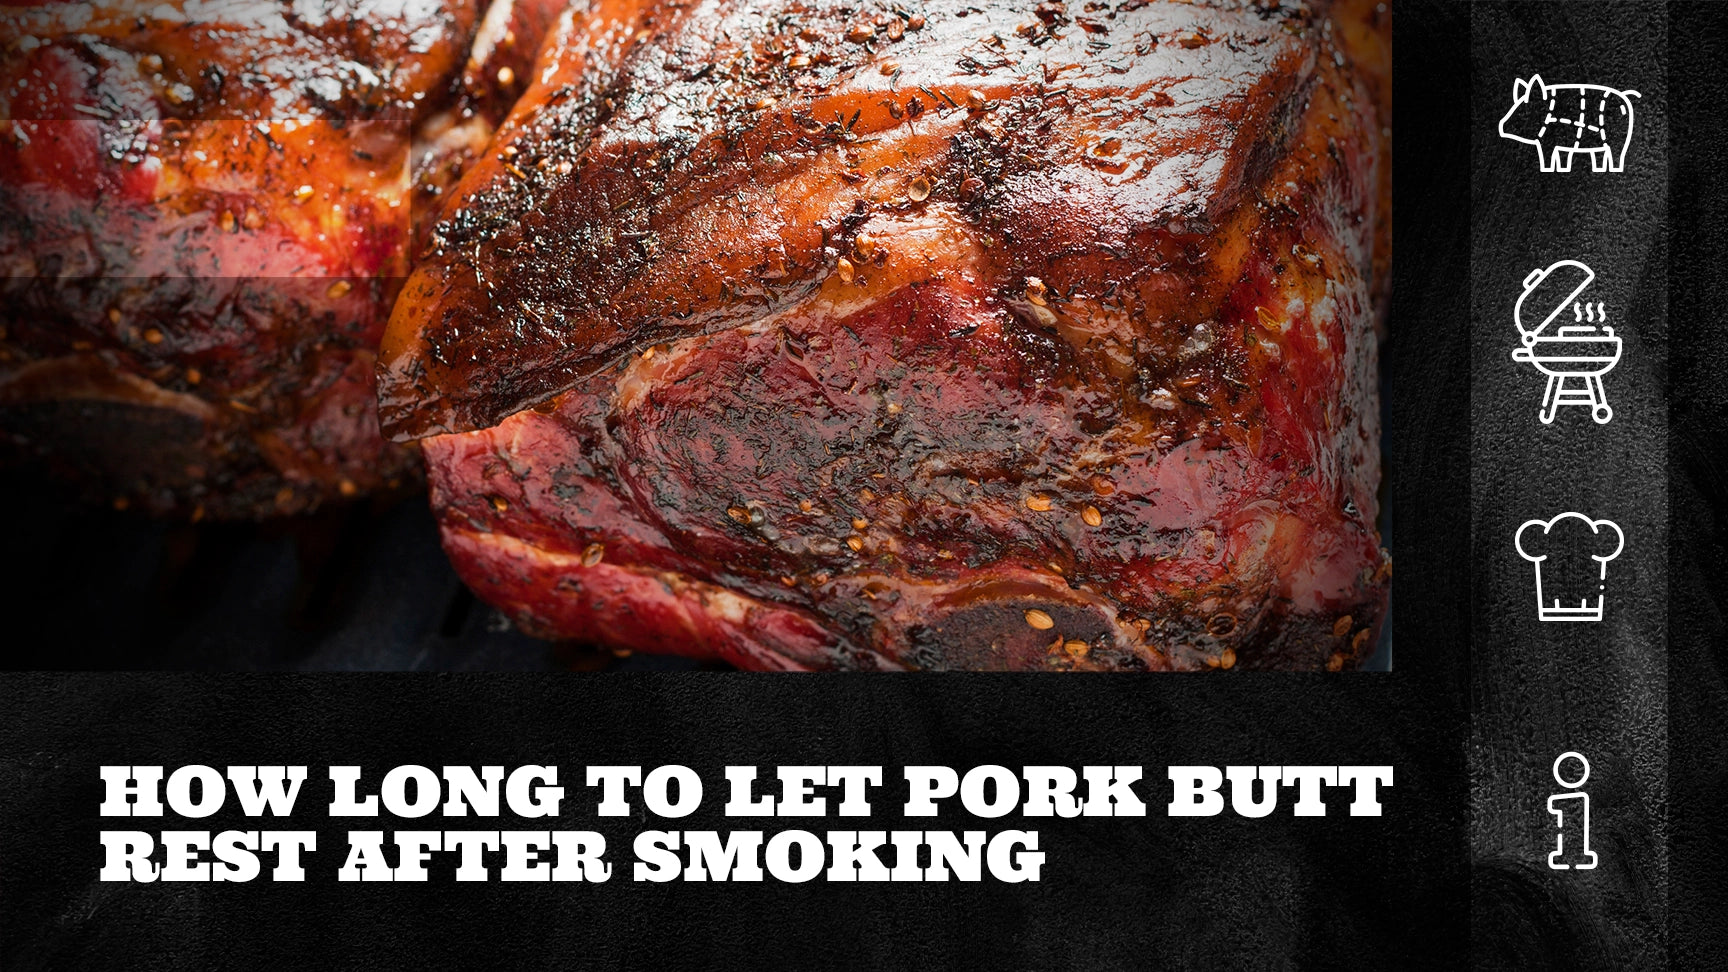 http://beardedbutchers.com/cdn/shop/articles/how-long-to-let-pork-butt-rest-after-smoking.webp?v=1680177089